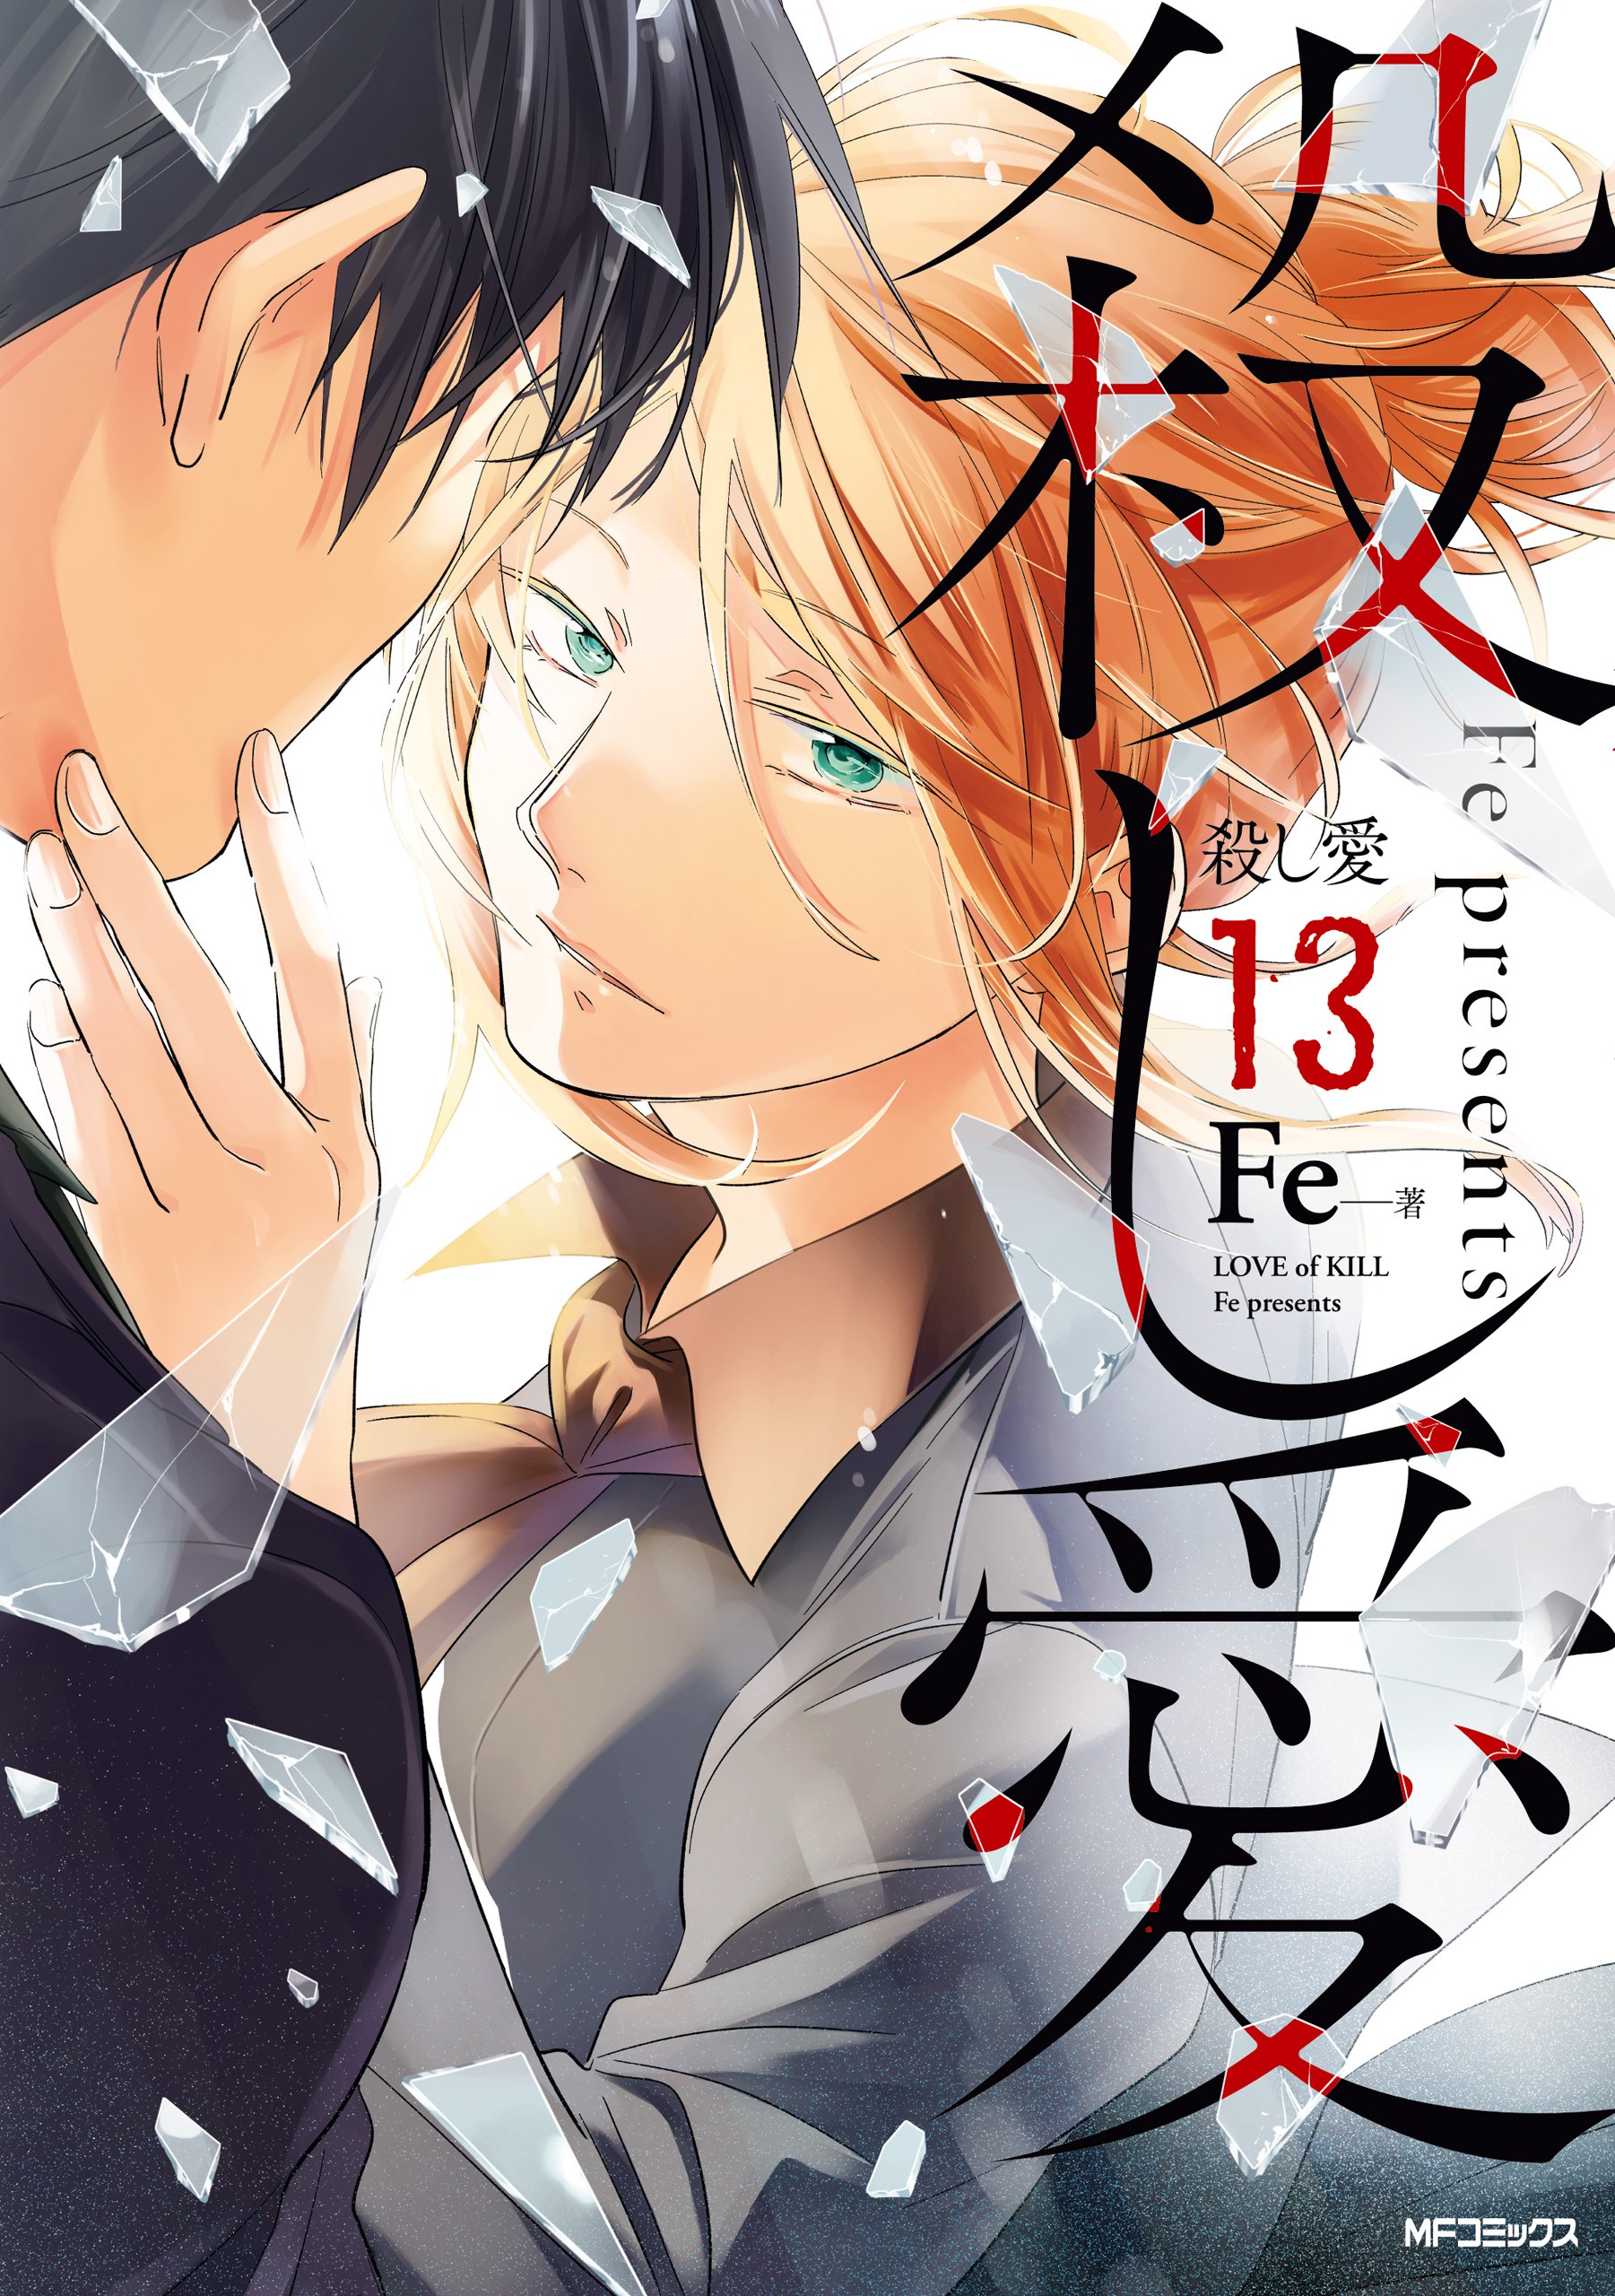 Love of Kill Volume 6 (Koroshi Ai) - Manga Store 